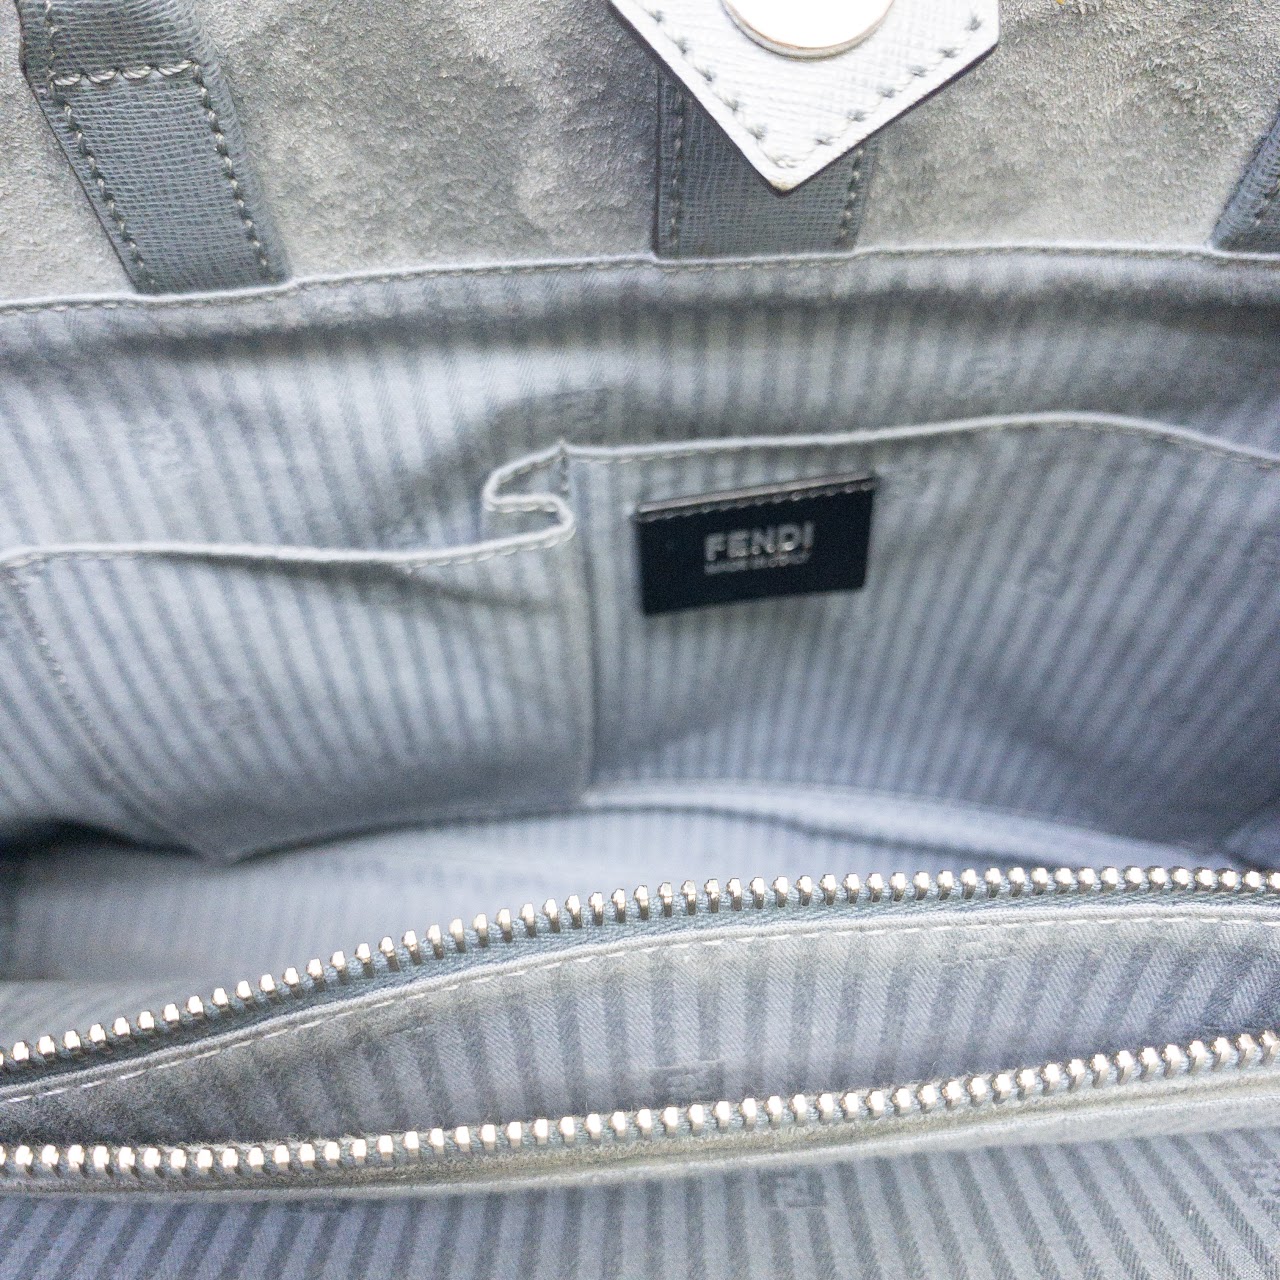 Fendi 2Jours Leather Shoulder Bag